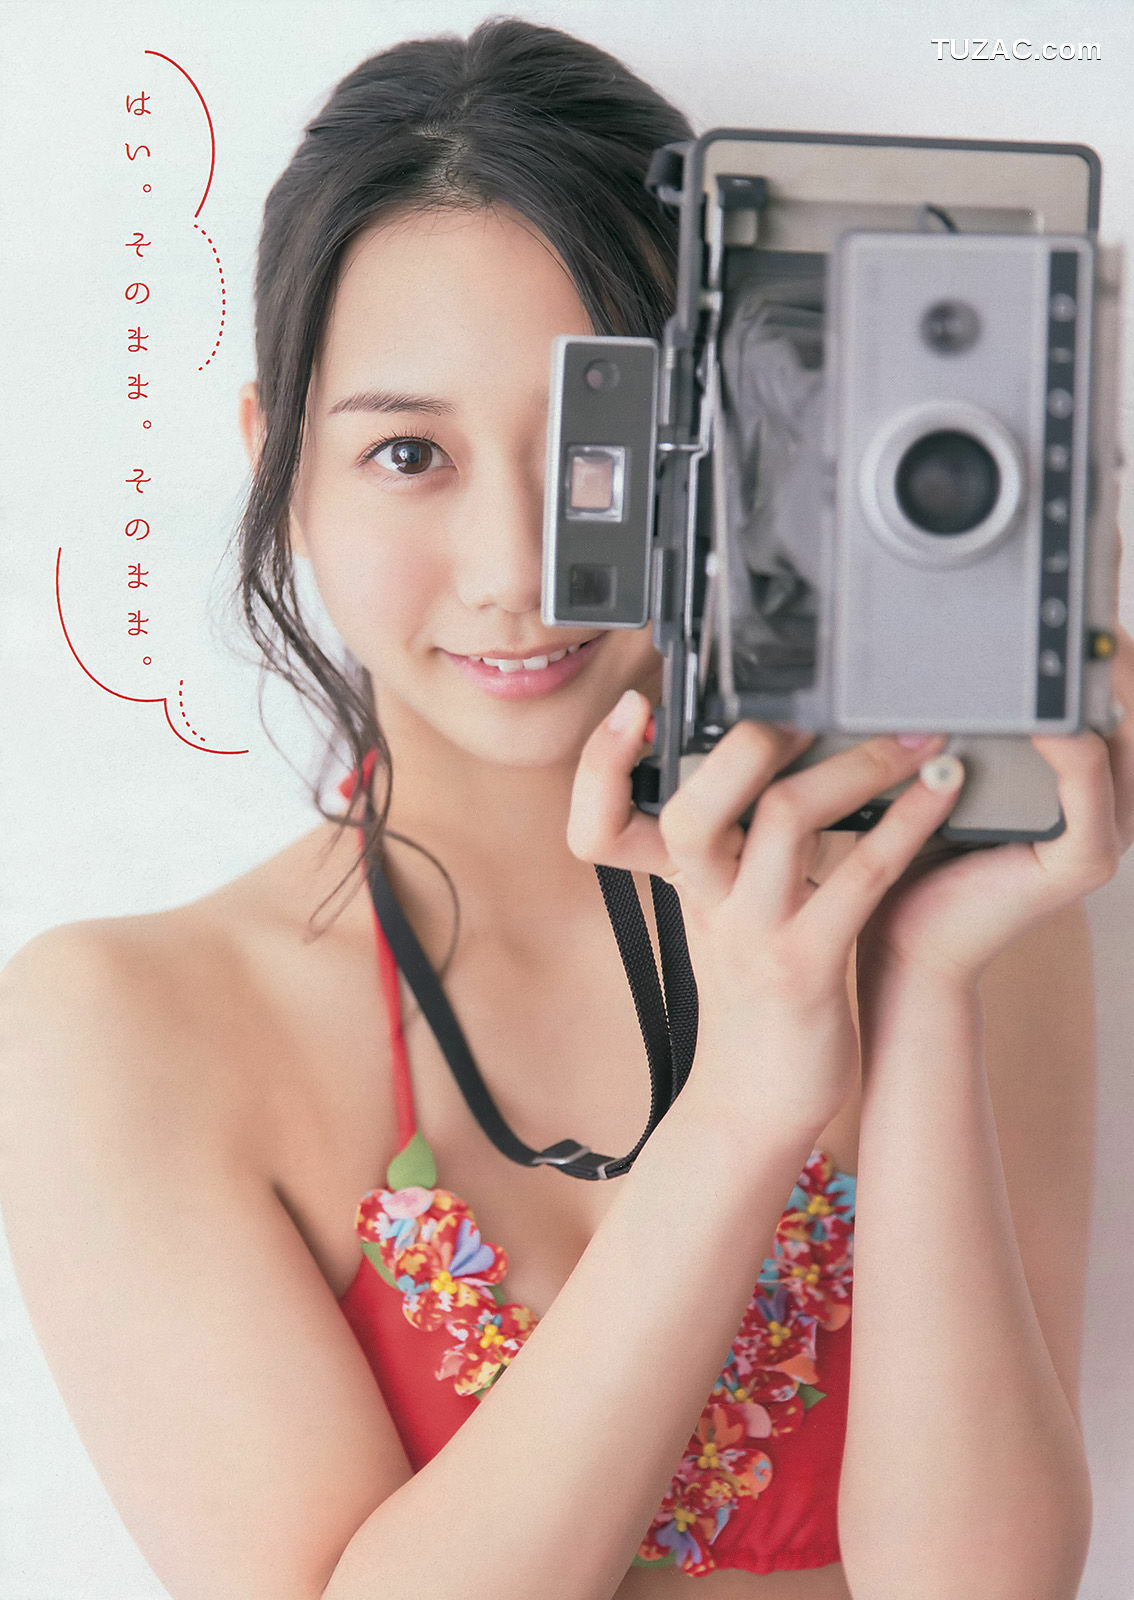 Young Magazine杂志写真_ 古畑奈和 外崎梨香 2014年No.15 写真杂志[12P]